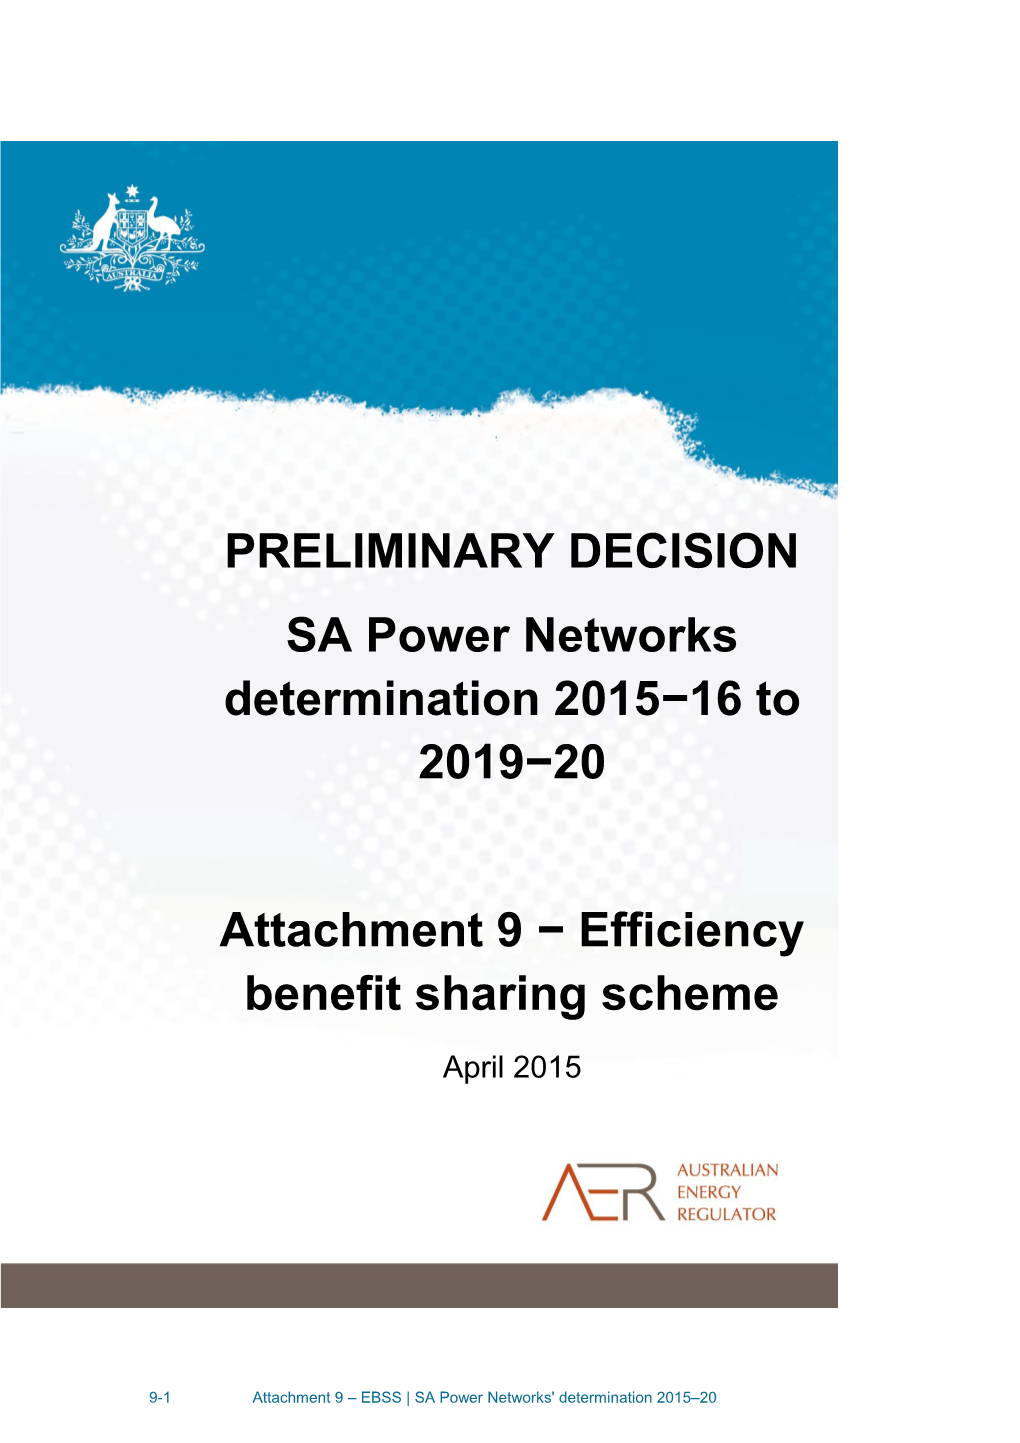 Attachment 9 Efficiency Benefit Sharing Scheme